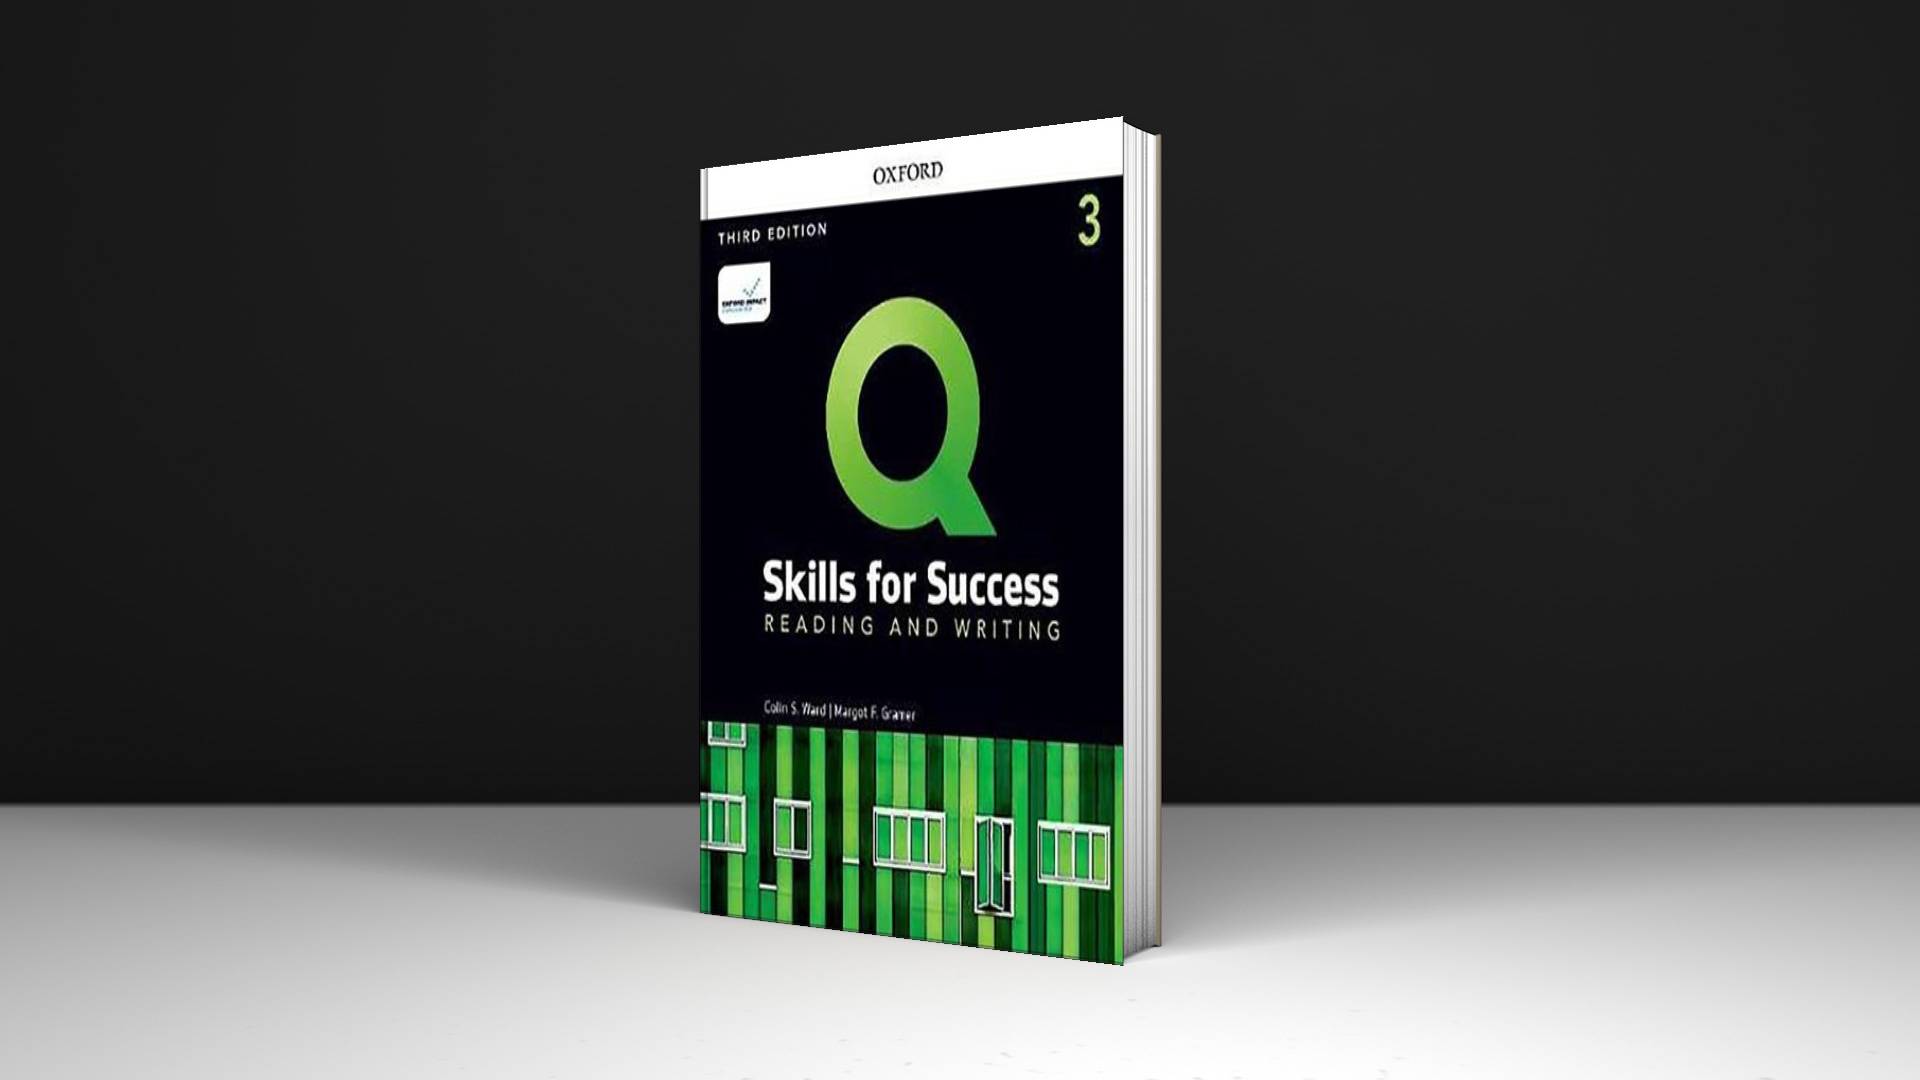 خرید کتاب زبان | فروشگاه اینترنتی کتاب زبان | Q Skills For Success Reading And Writing 3 Third Edition | کیو اسکیلز فور ساکسس ریدینگ اند رایتینگ سه ویرایش سوم